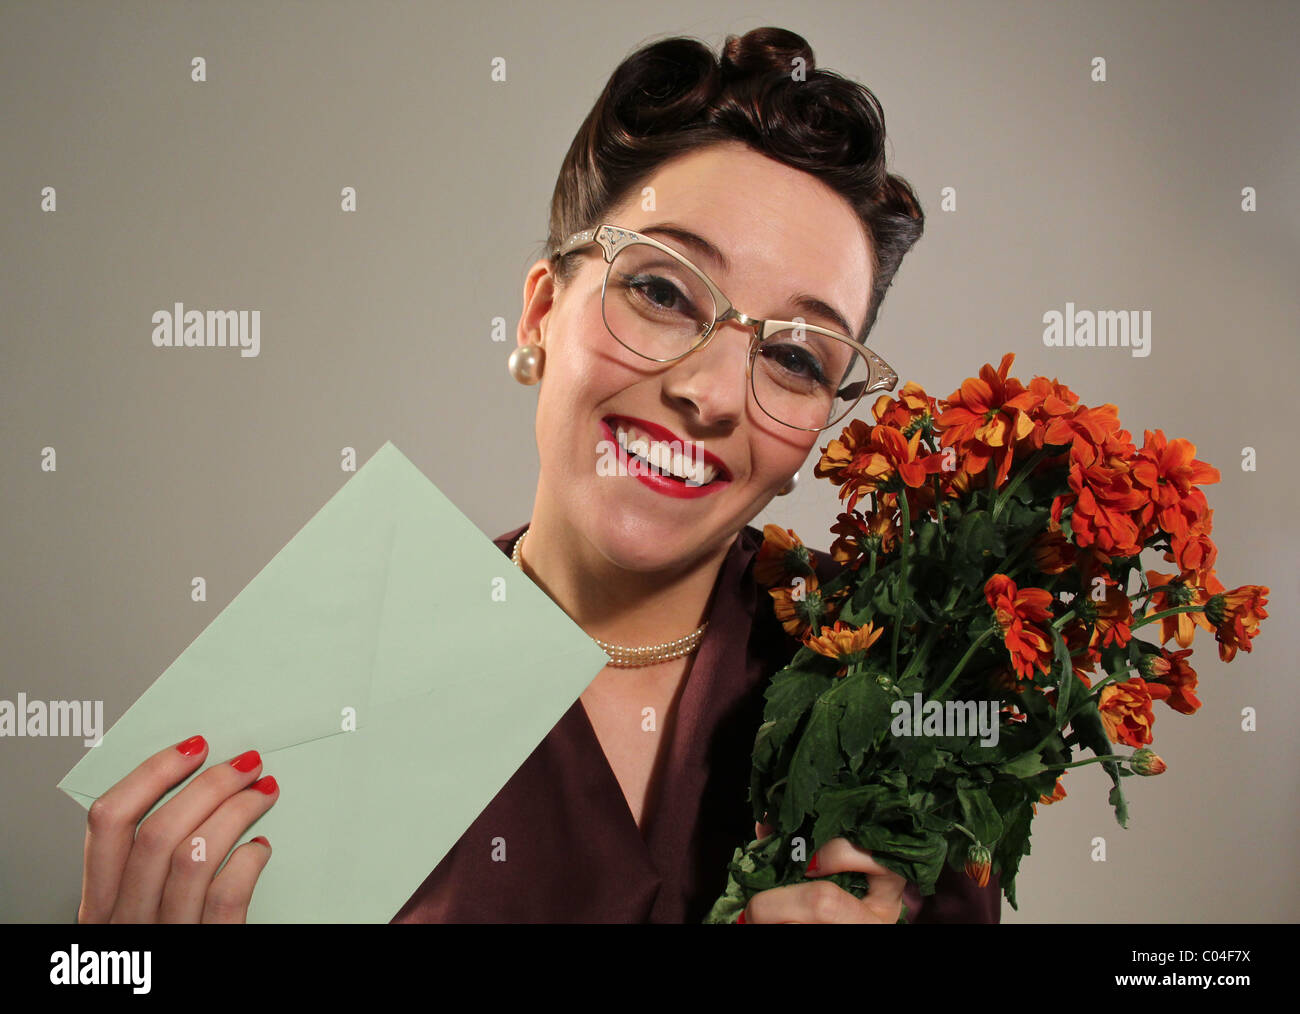 Retro-Frau mit einem Blumenstrauß und einer Karte, Bild von Tony Rusecki Stockfoto